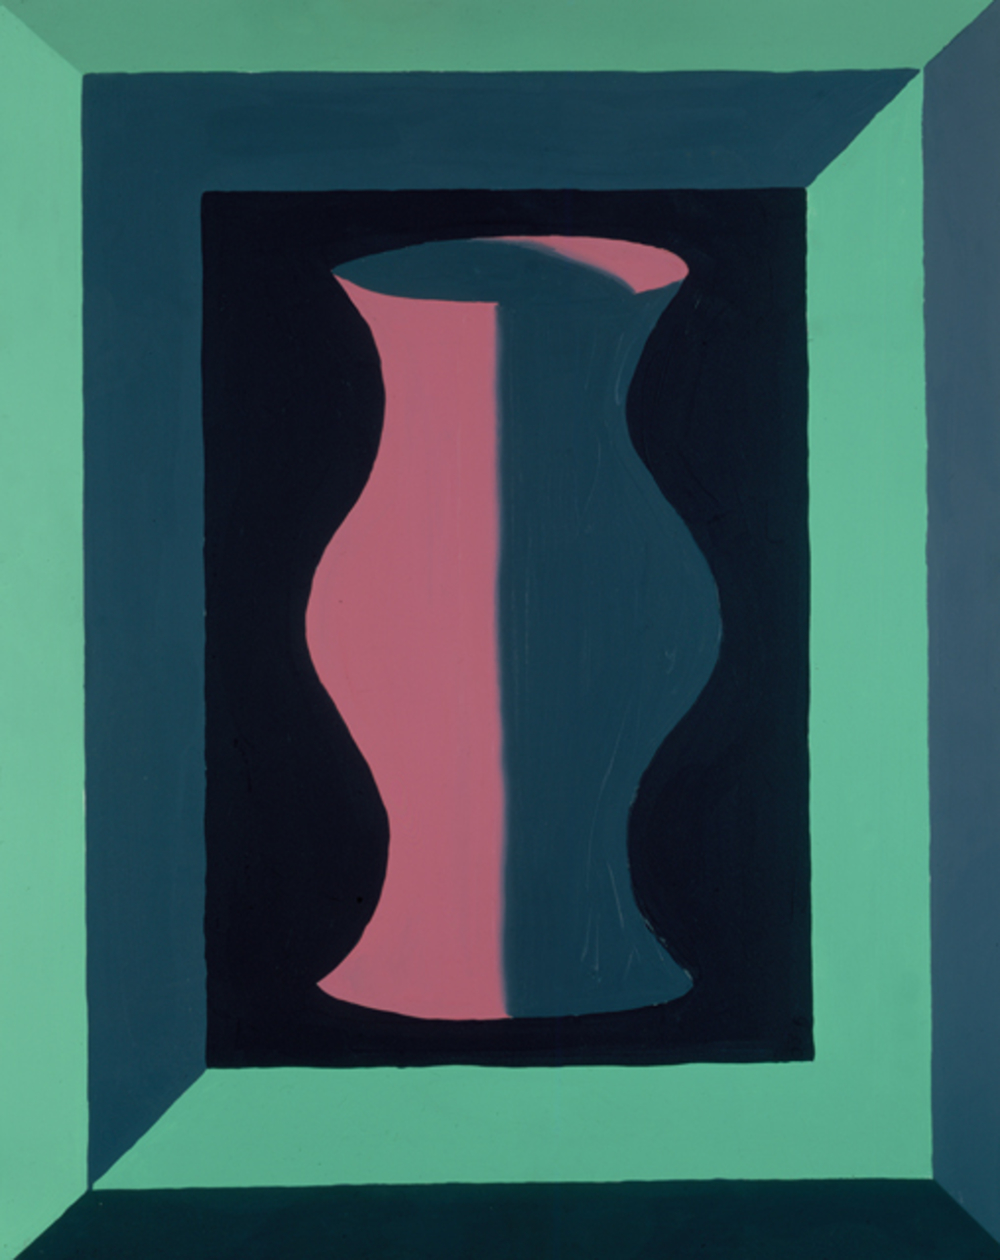 Artwork by Jedd Garet: Pink and Grey Vase, 1979